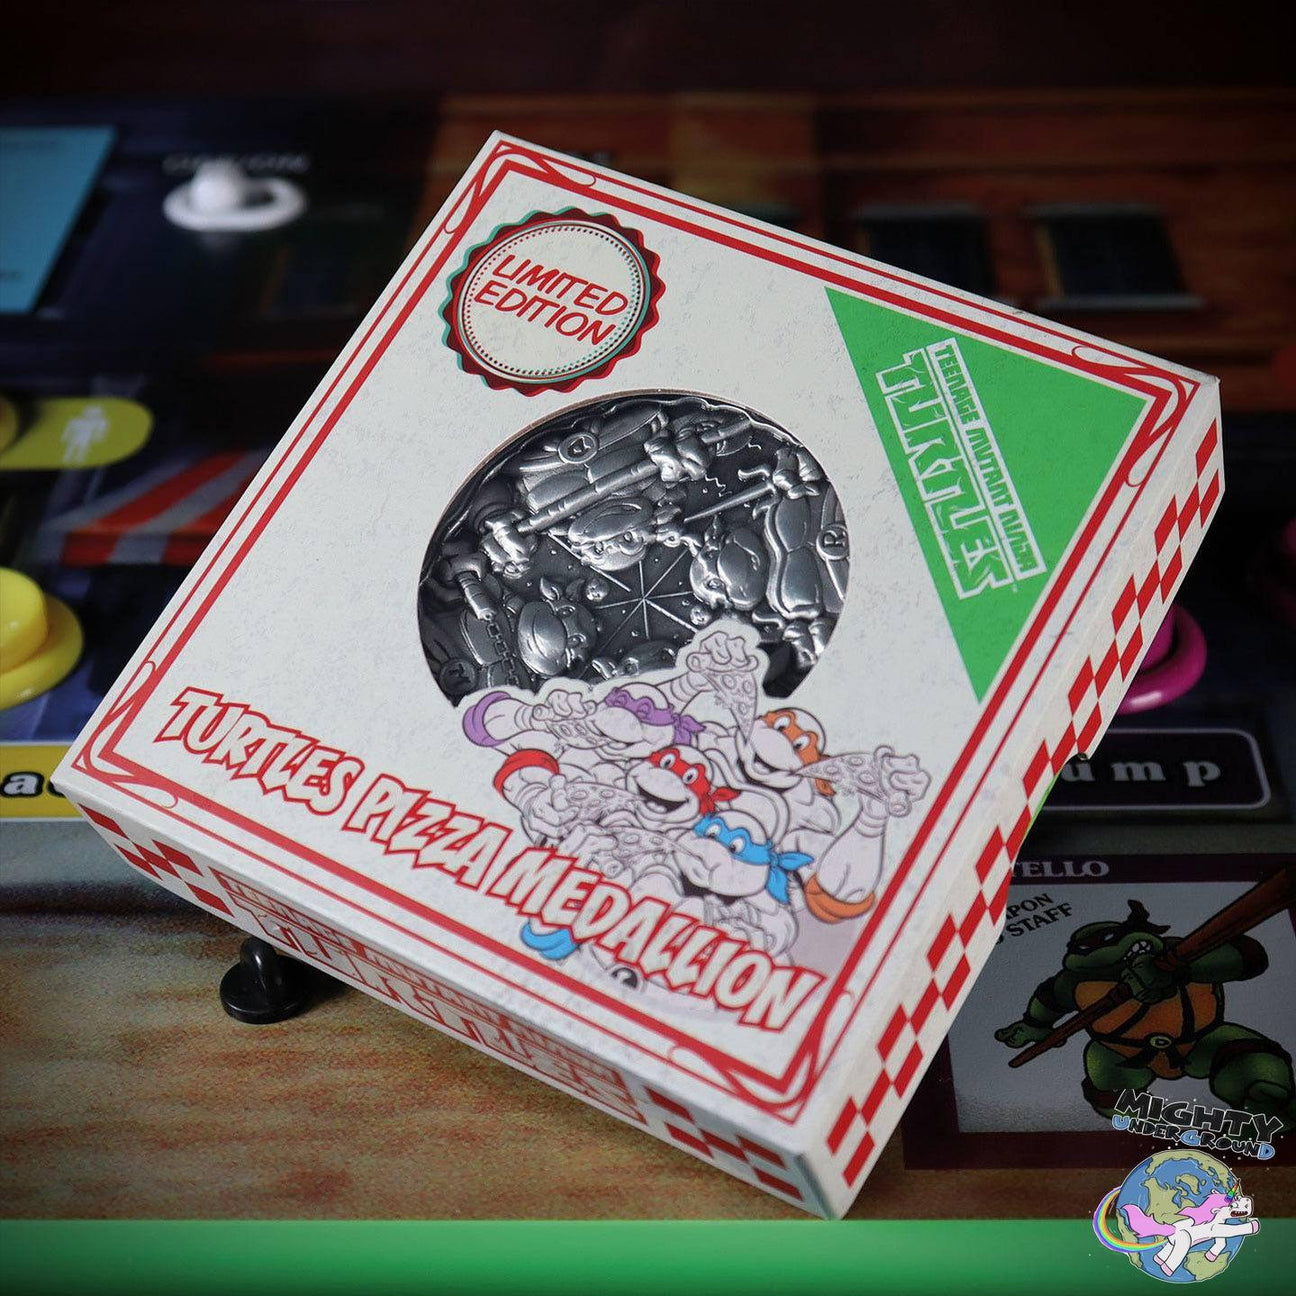 TMNT: Pizza Medaille (Limited Edition)-Merchandise-FaNaTtik-Mighty Underground